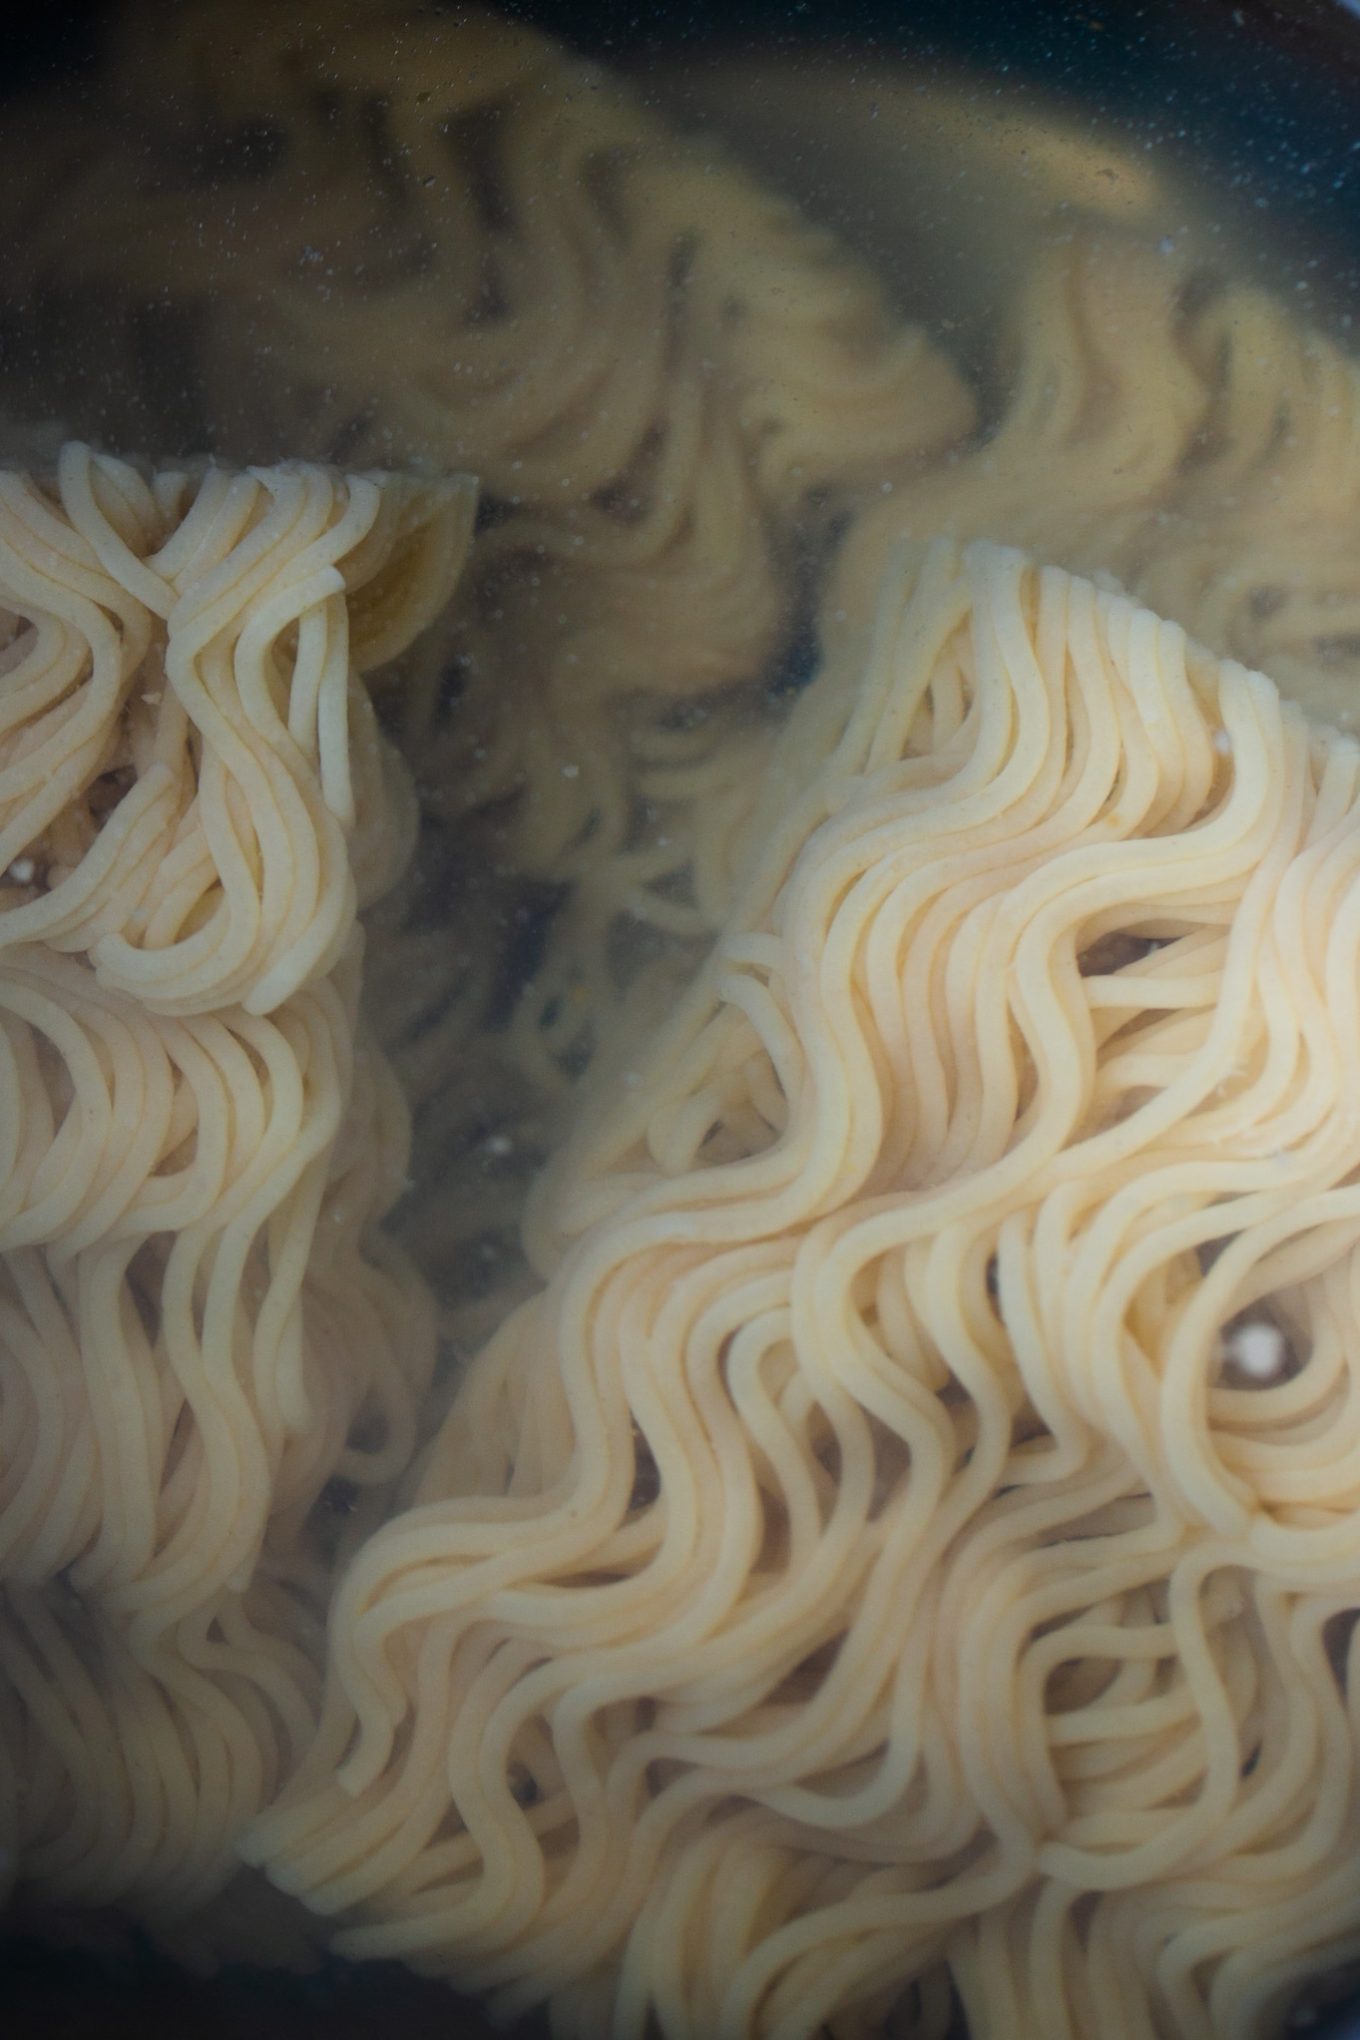 Gluten free ramen noodles in water